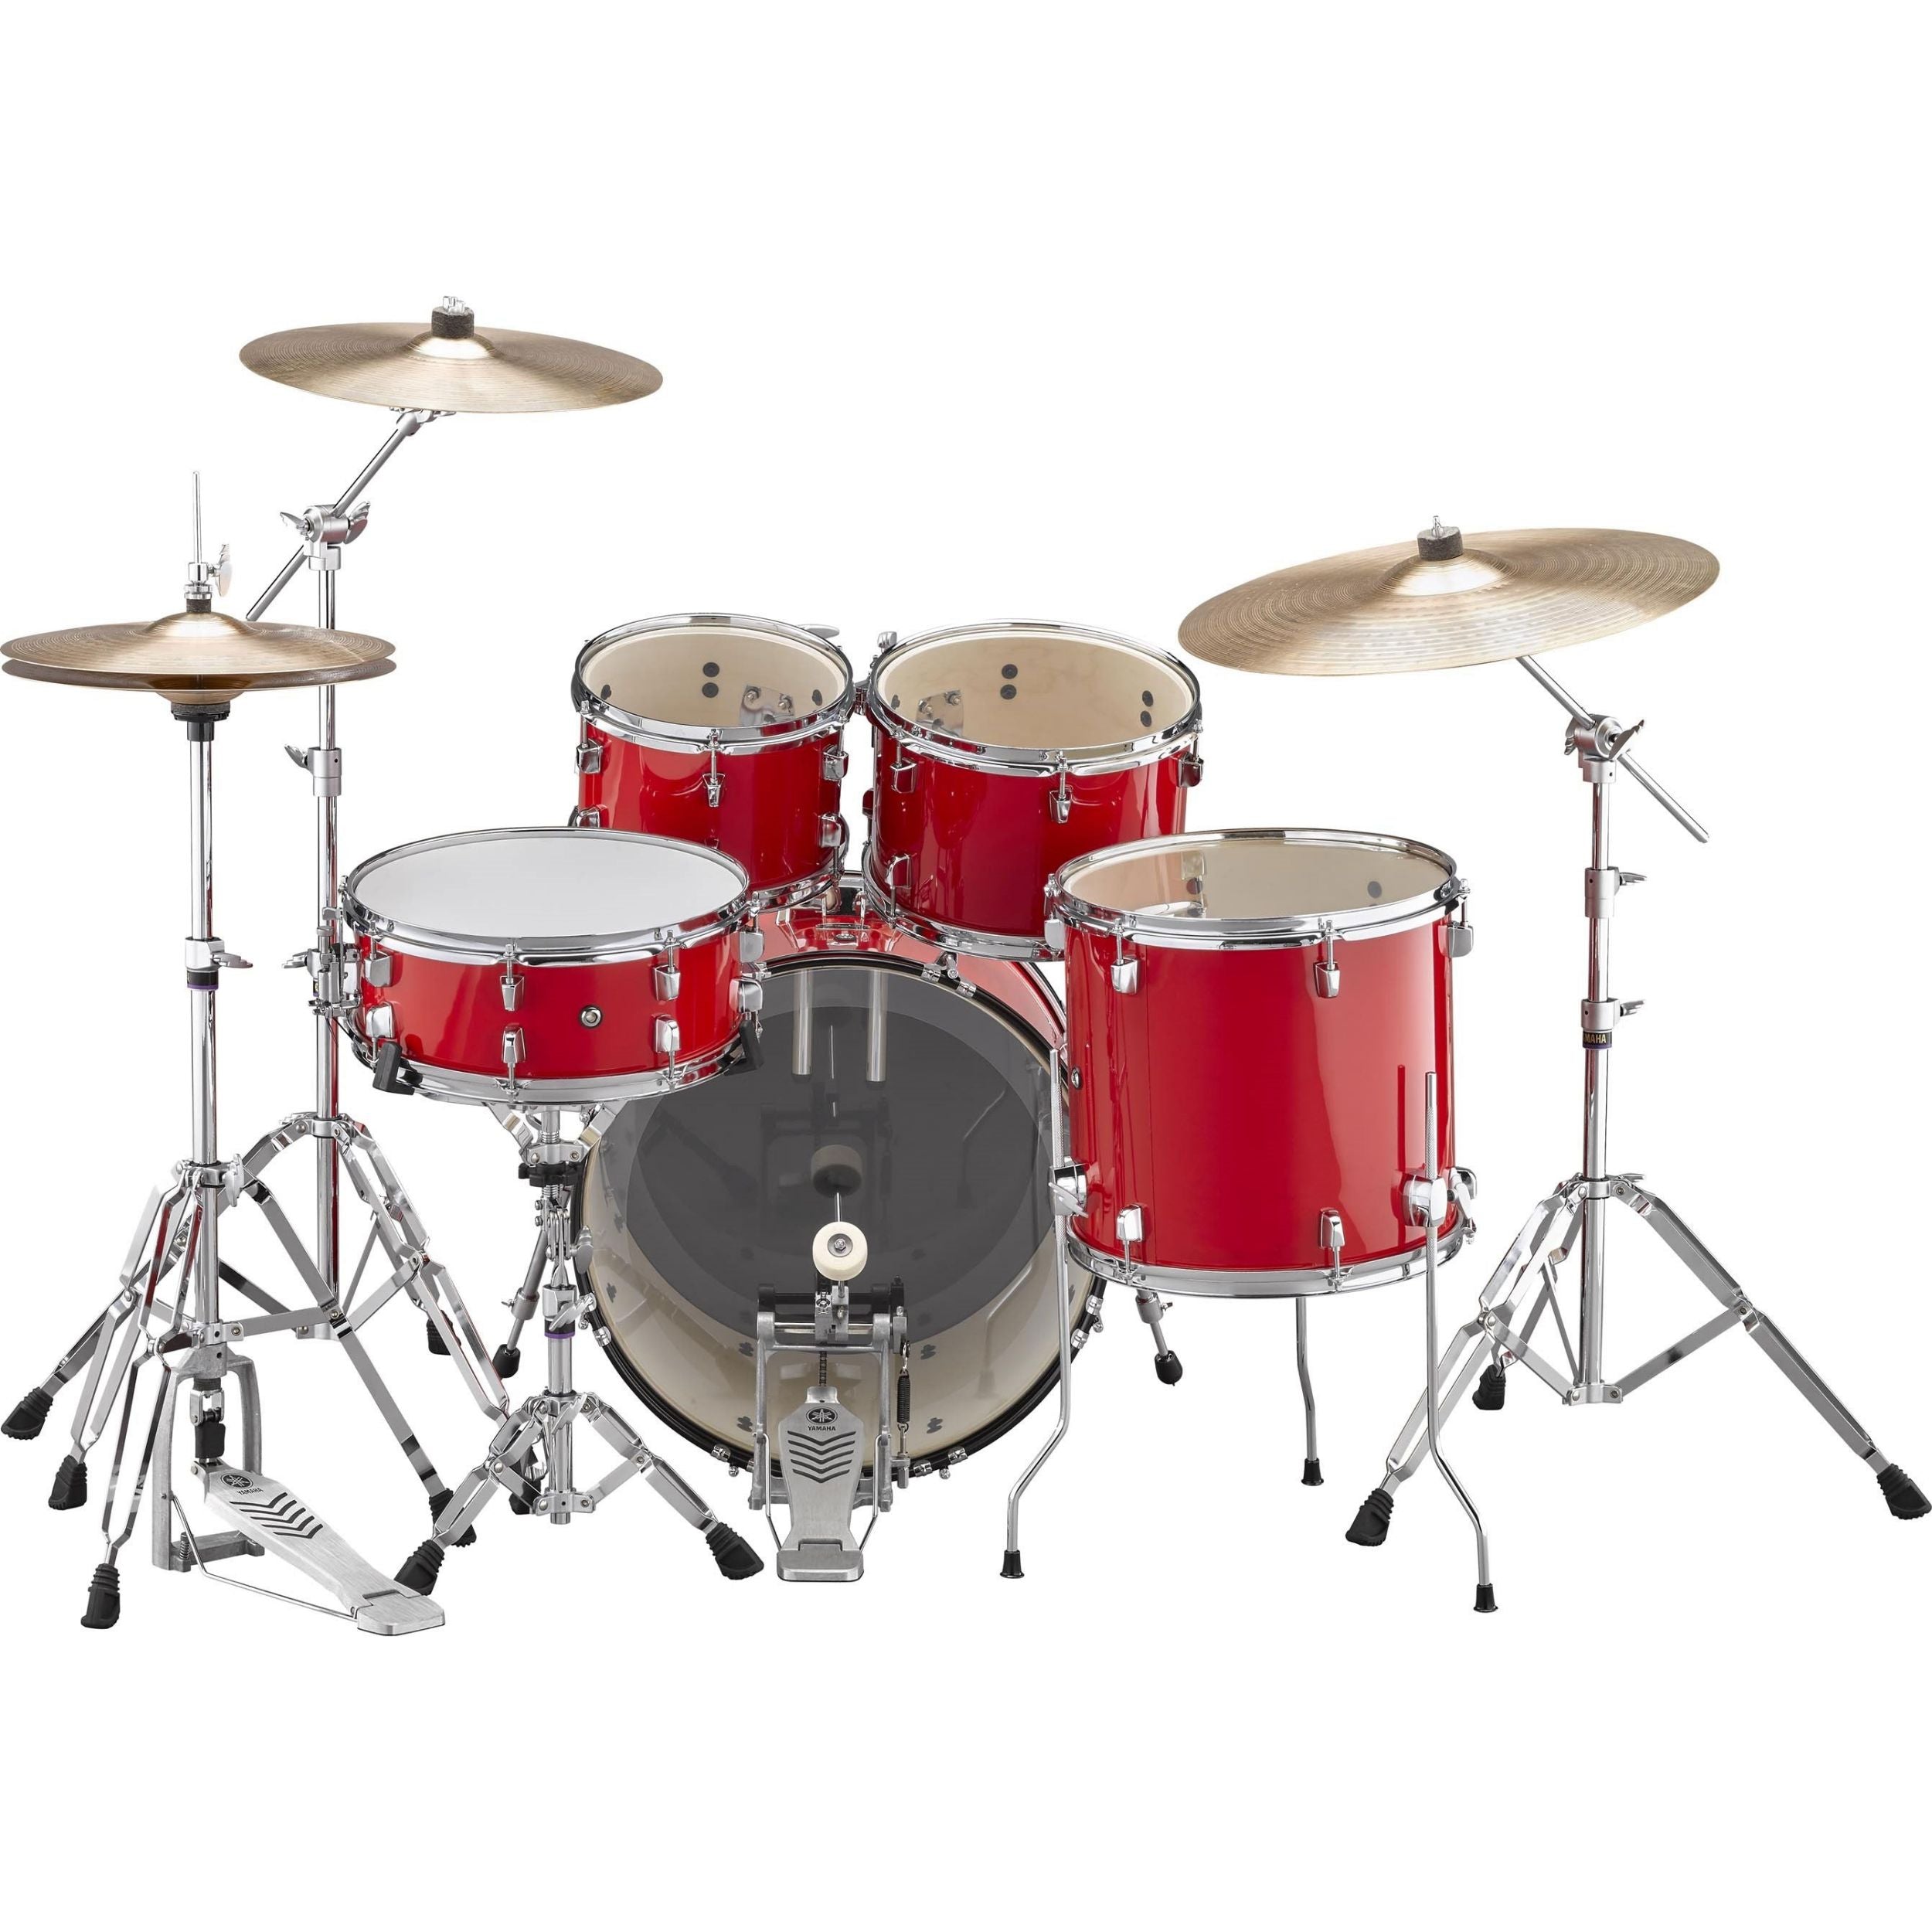 Yamaha RDP0F5RD Rydeen Fusion Drum Kit, Hot Red with Free Yamaha Stool & Sticks